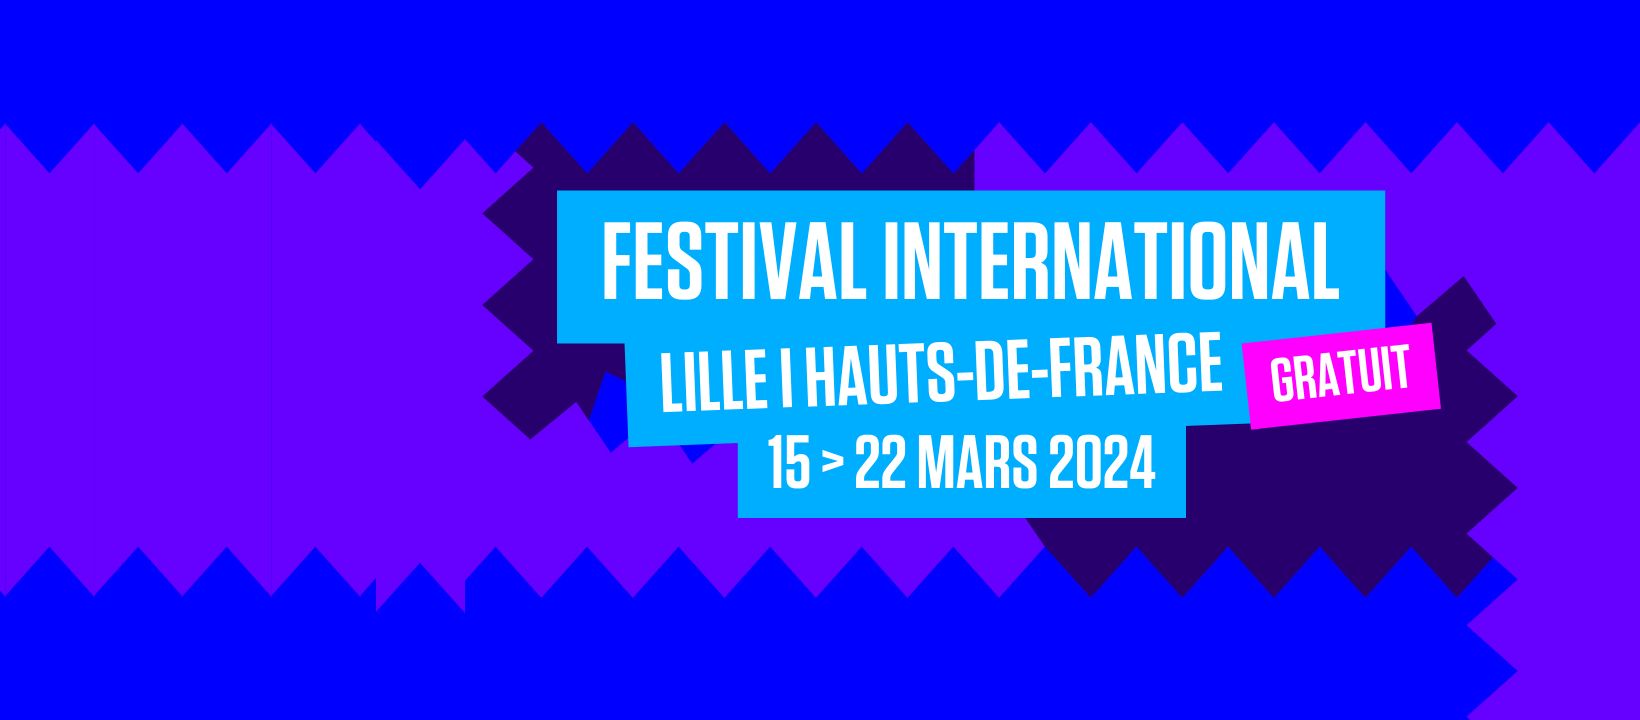 Le festival Séries Mania, du 15 au 22 mars à Lille